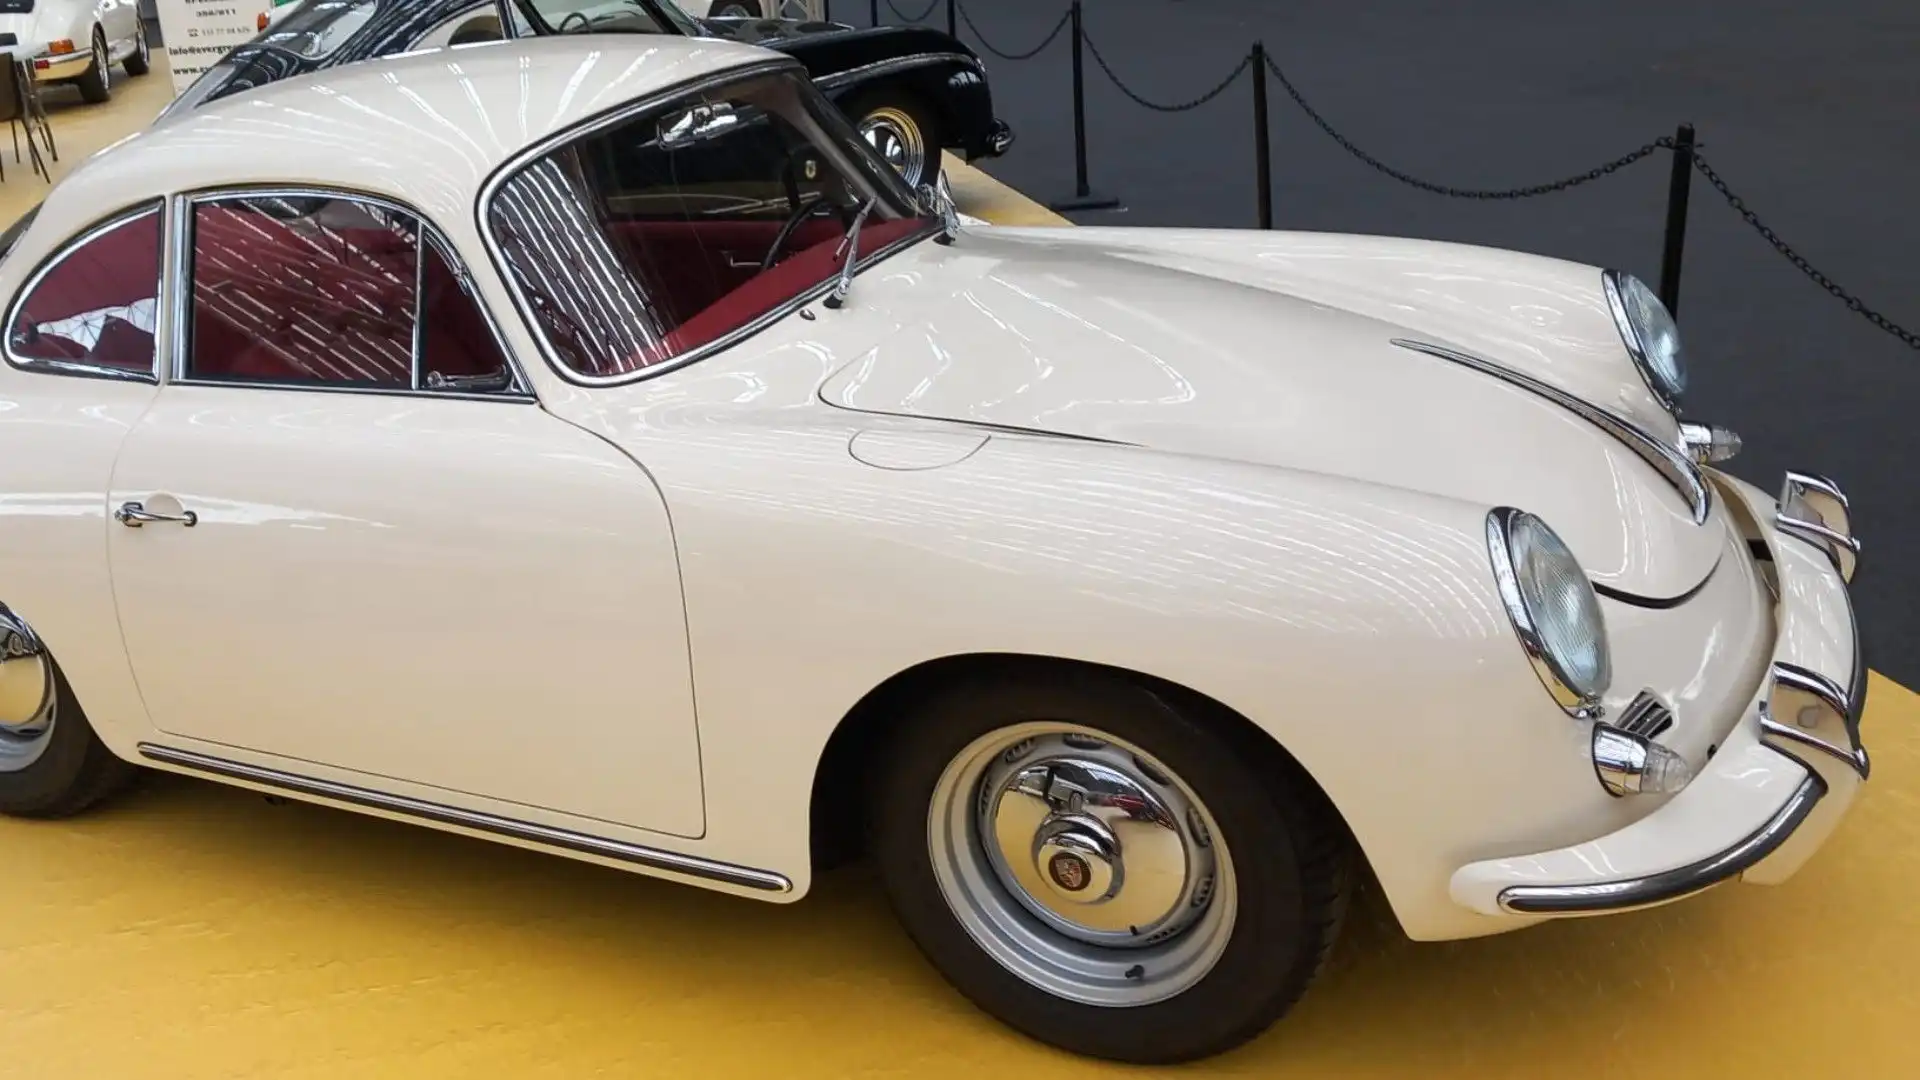 Il design della Porsche 356 era rivoluzionario per l'epoca